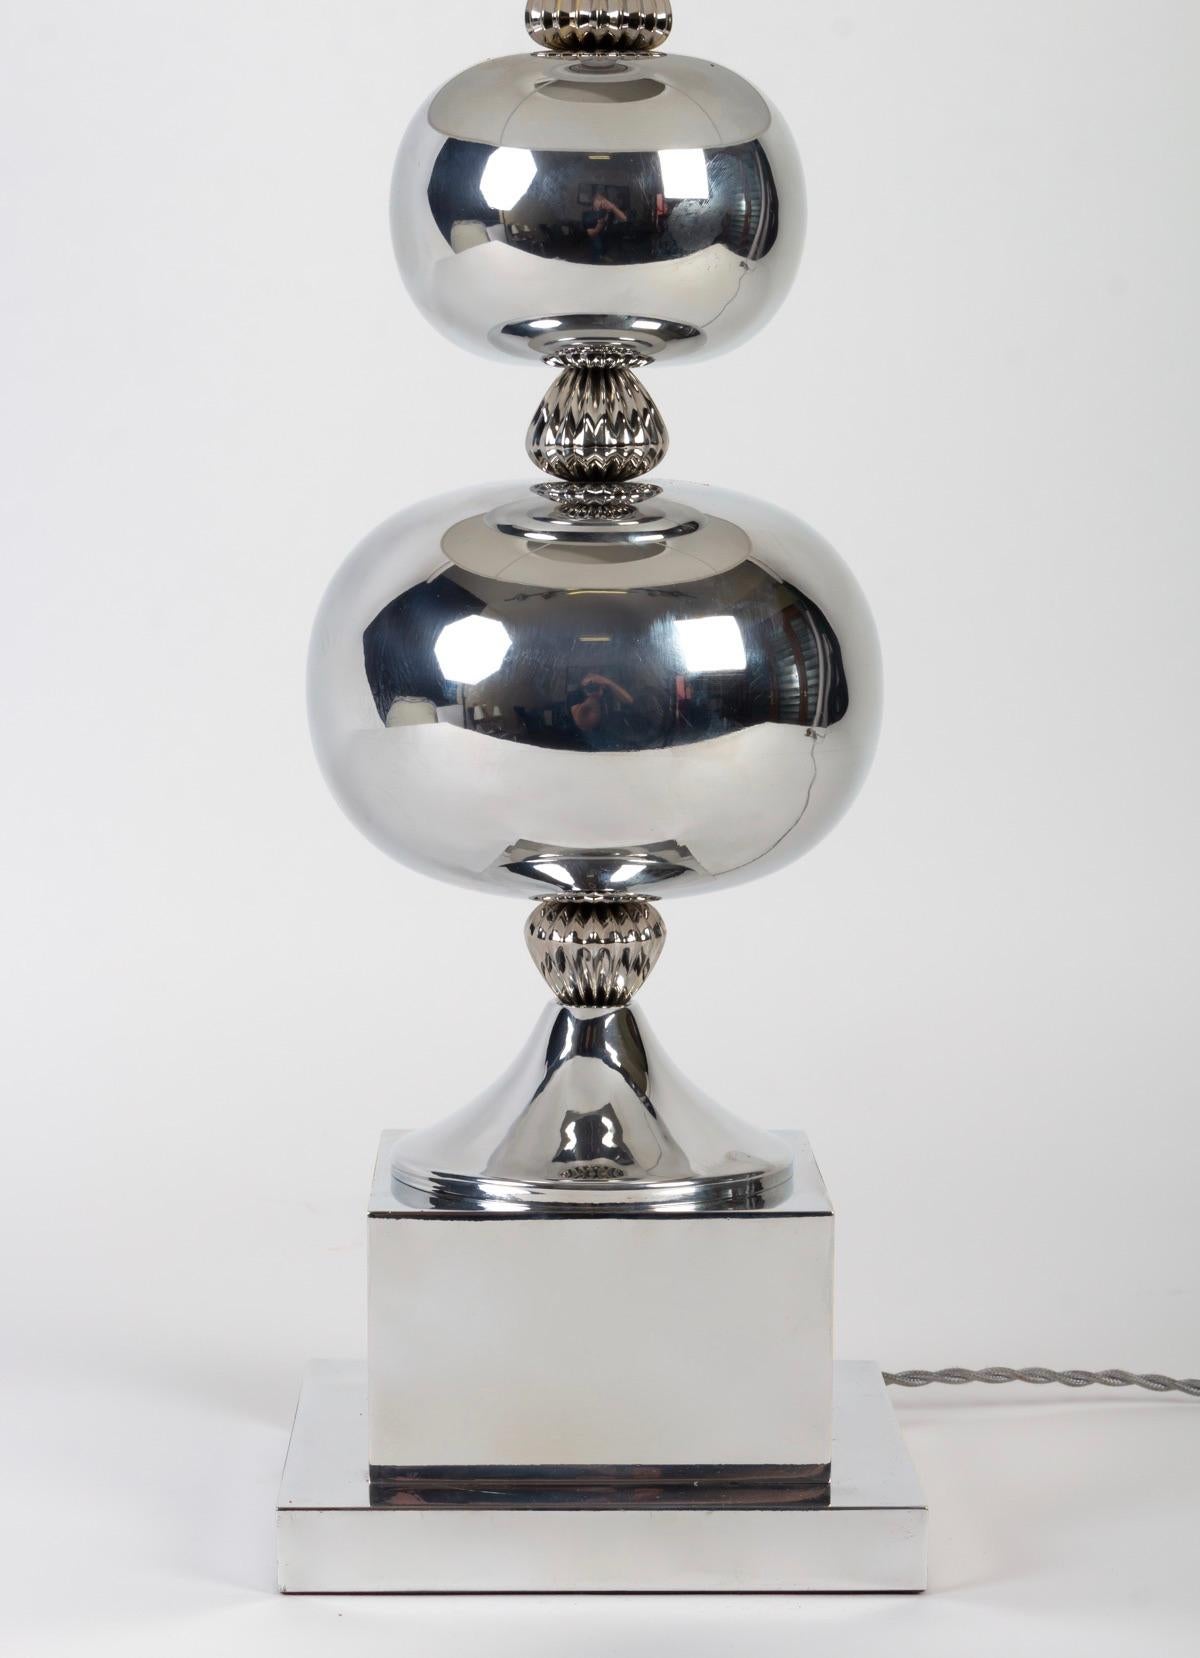 Élégante lampe à boules argentées fabriquée dans les années 1970. P. Barbier

Composé d'une base de section carrée surmontée d'un cube sur lequel est positionné un pied de douche.
Au sommet de la base de la douche, deux boules argentées de tailles